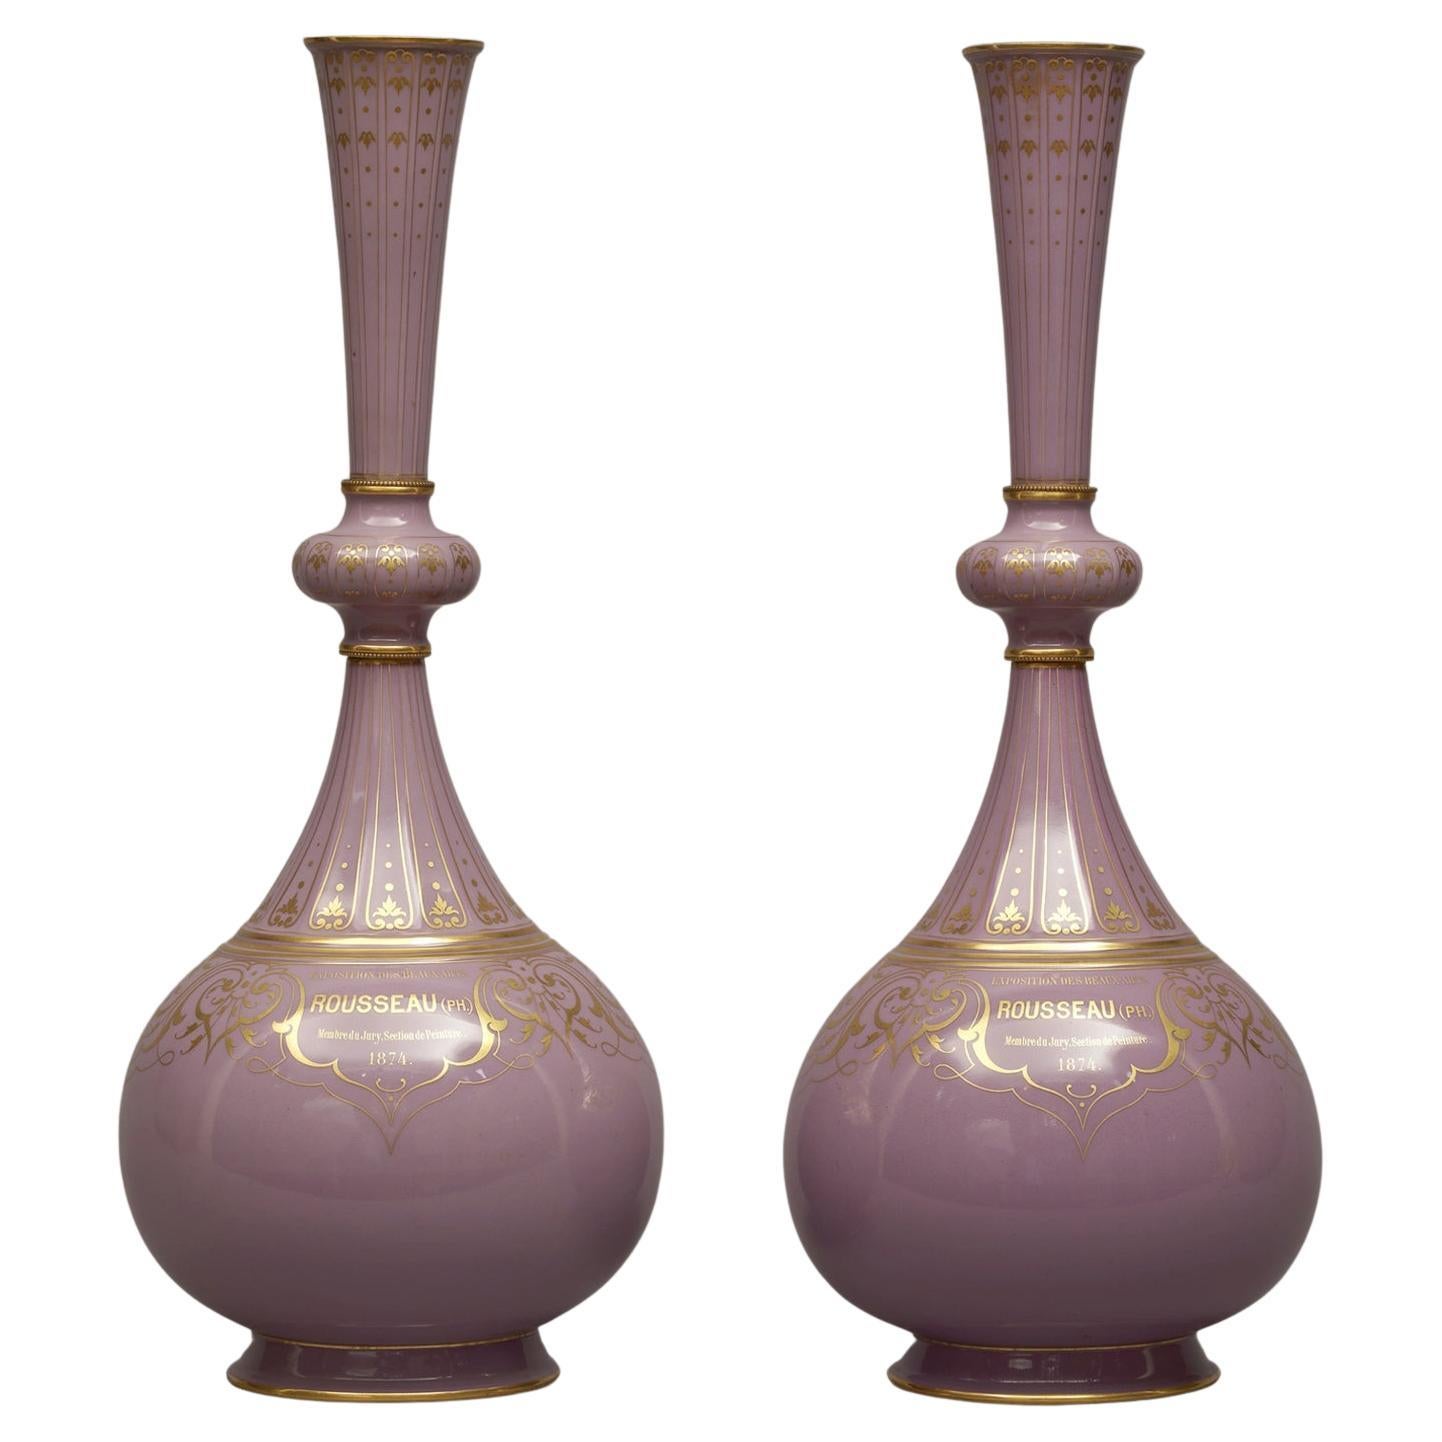 A Pair of Sèvres Porcelain Presentation Vases, Designed by Albert-Ernest Carrier